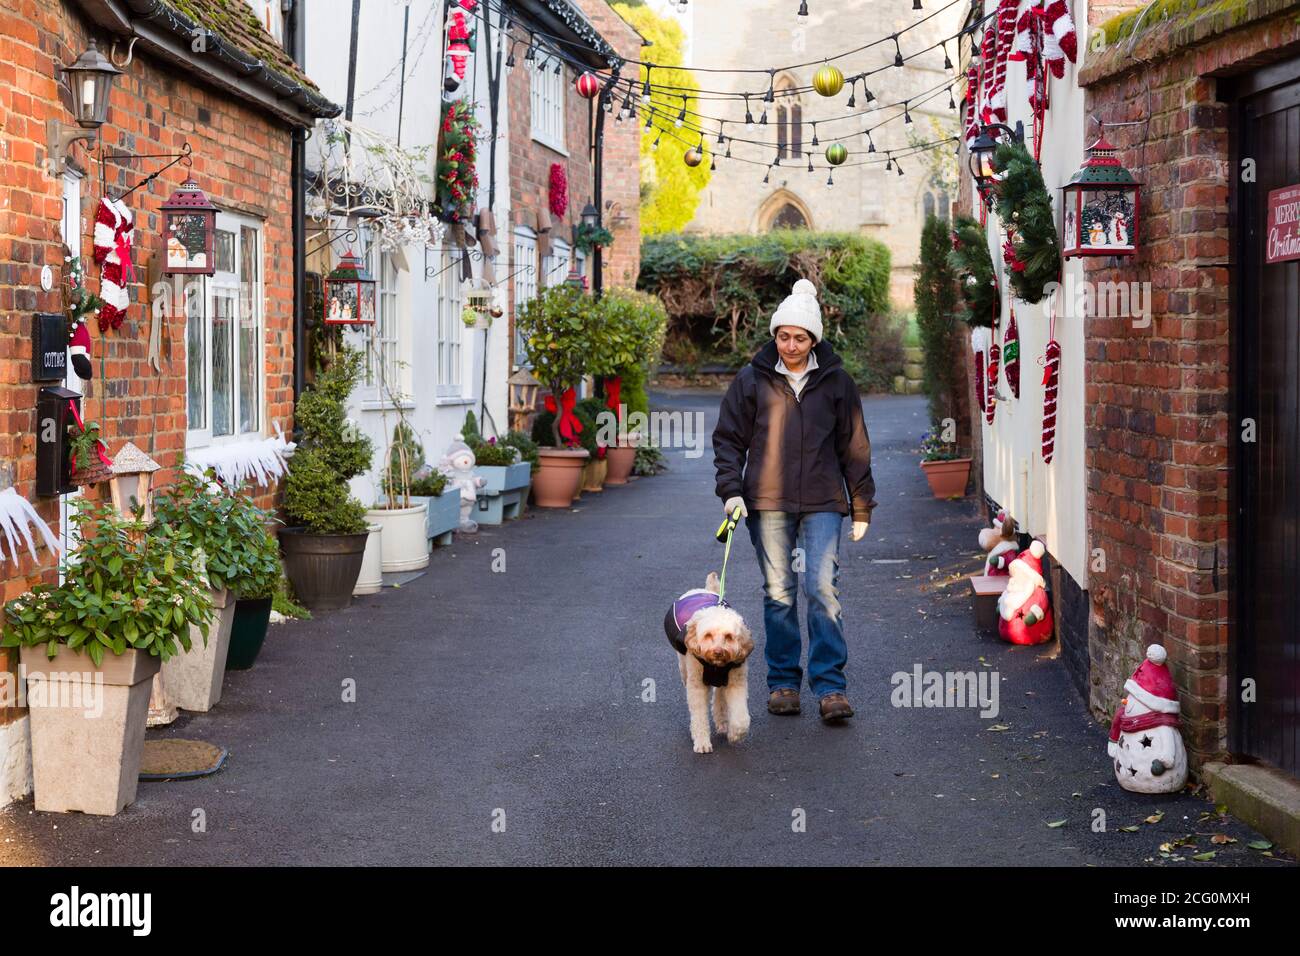 Femme indienne d'Asie britannique marchant chien à Noël dans un Jolie scène de rue du Royaume-Uni avec de vieux cottages Banque D'Images